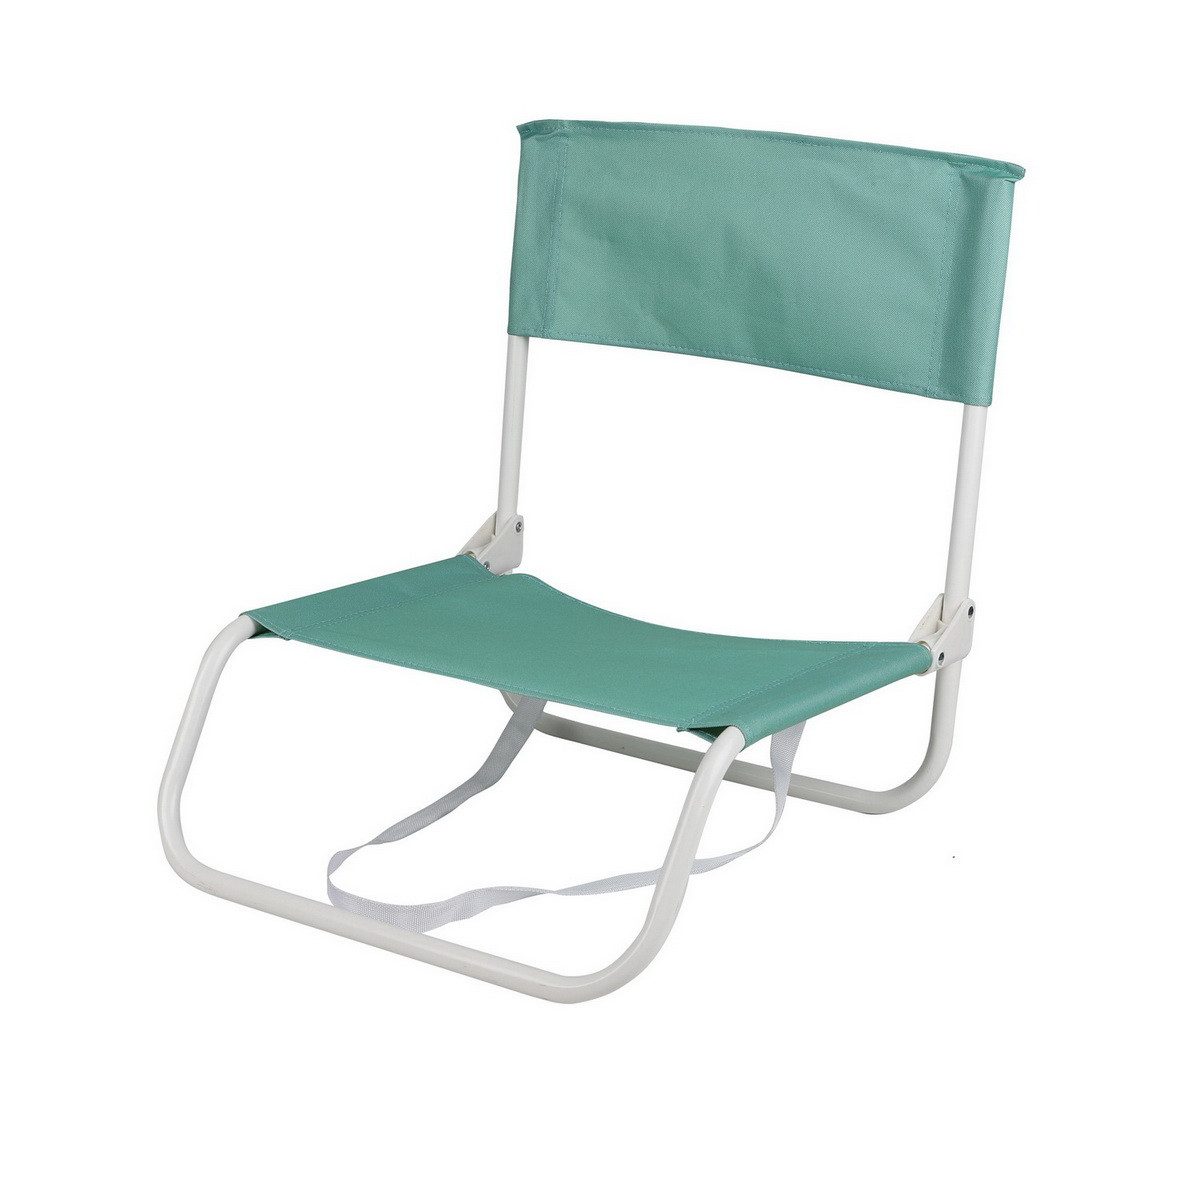 Sunnydays Campingstuhl klappbarer Strandstuhl Camping-Stuhl mit Trageschlaufe, Leichtgewicht mit etwas über 1 Kg